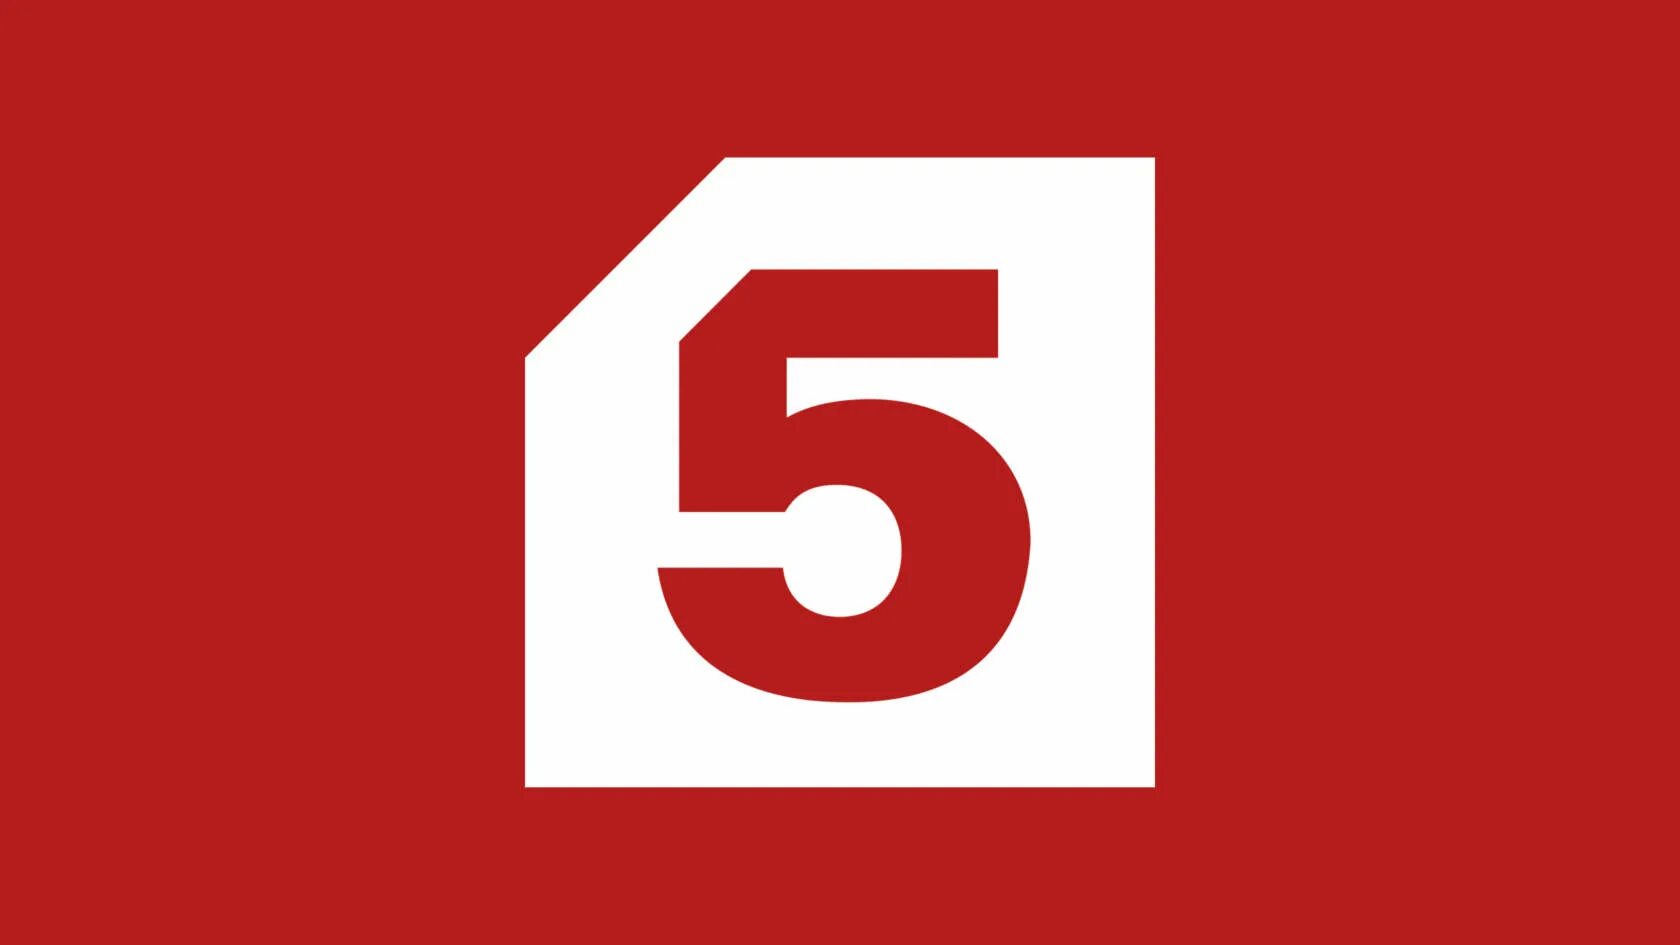 2 2 5 телеканал. 5 Канал. Телеканал 5. Логотипы телеканалов 5 канал. Сейчас пятый канал логотип.